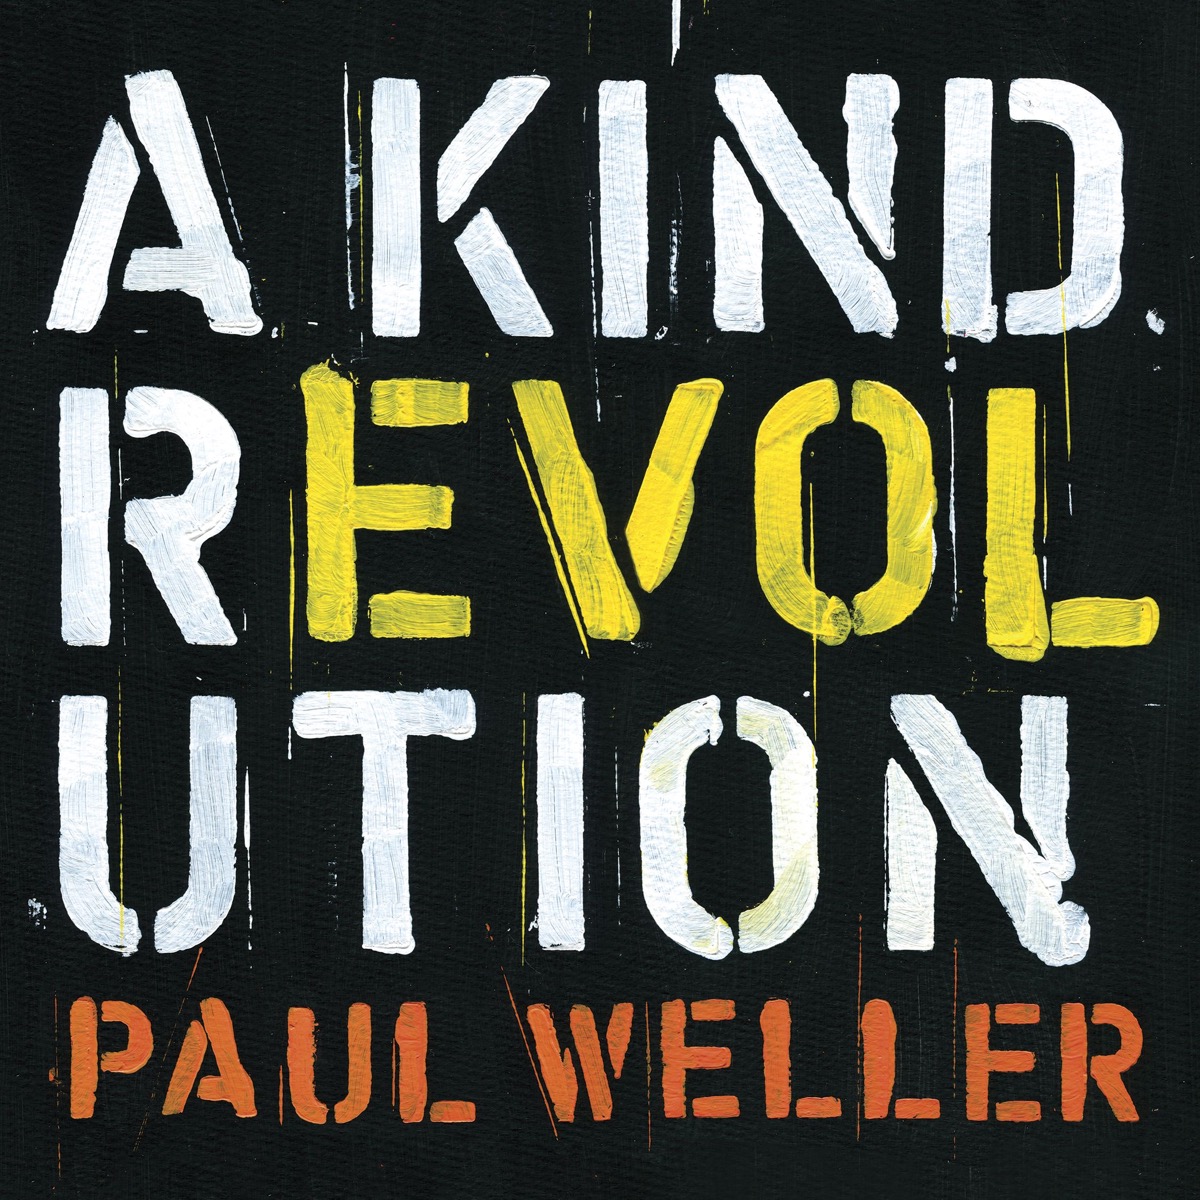 Paul Weller(ポール・ウェラー)の情報まとめ | OKMusic - 全ての音楽情報がここに